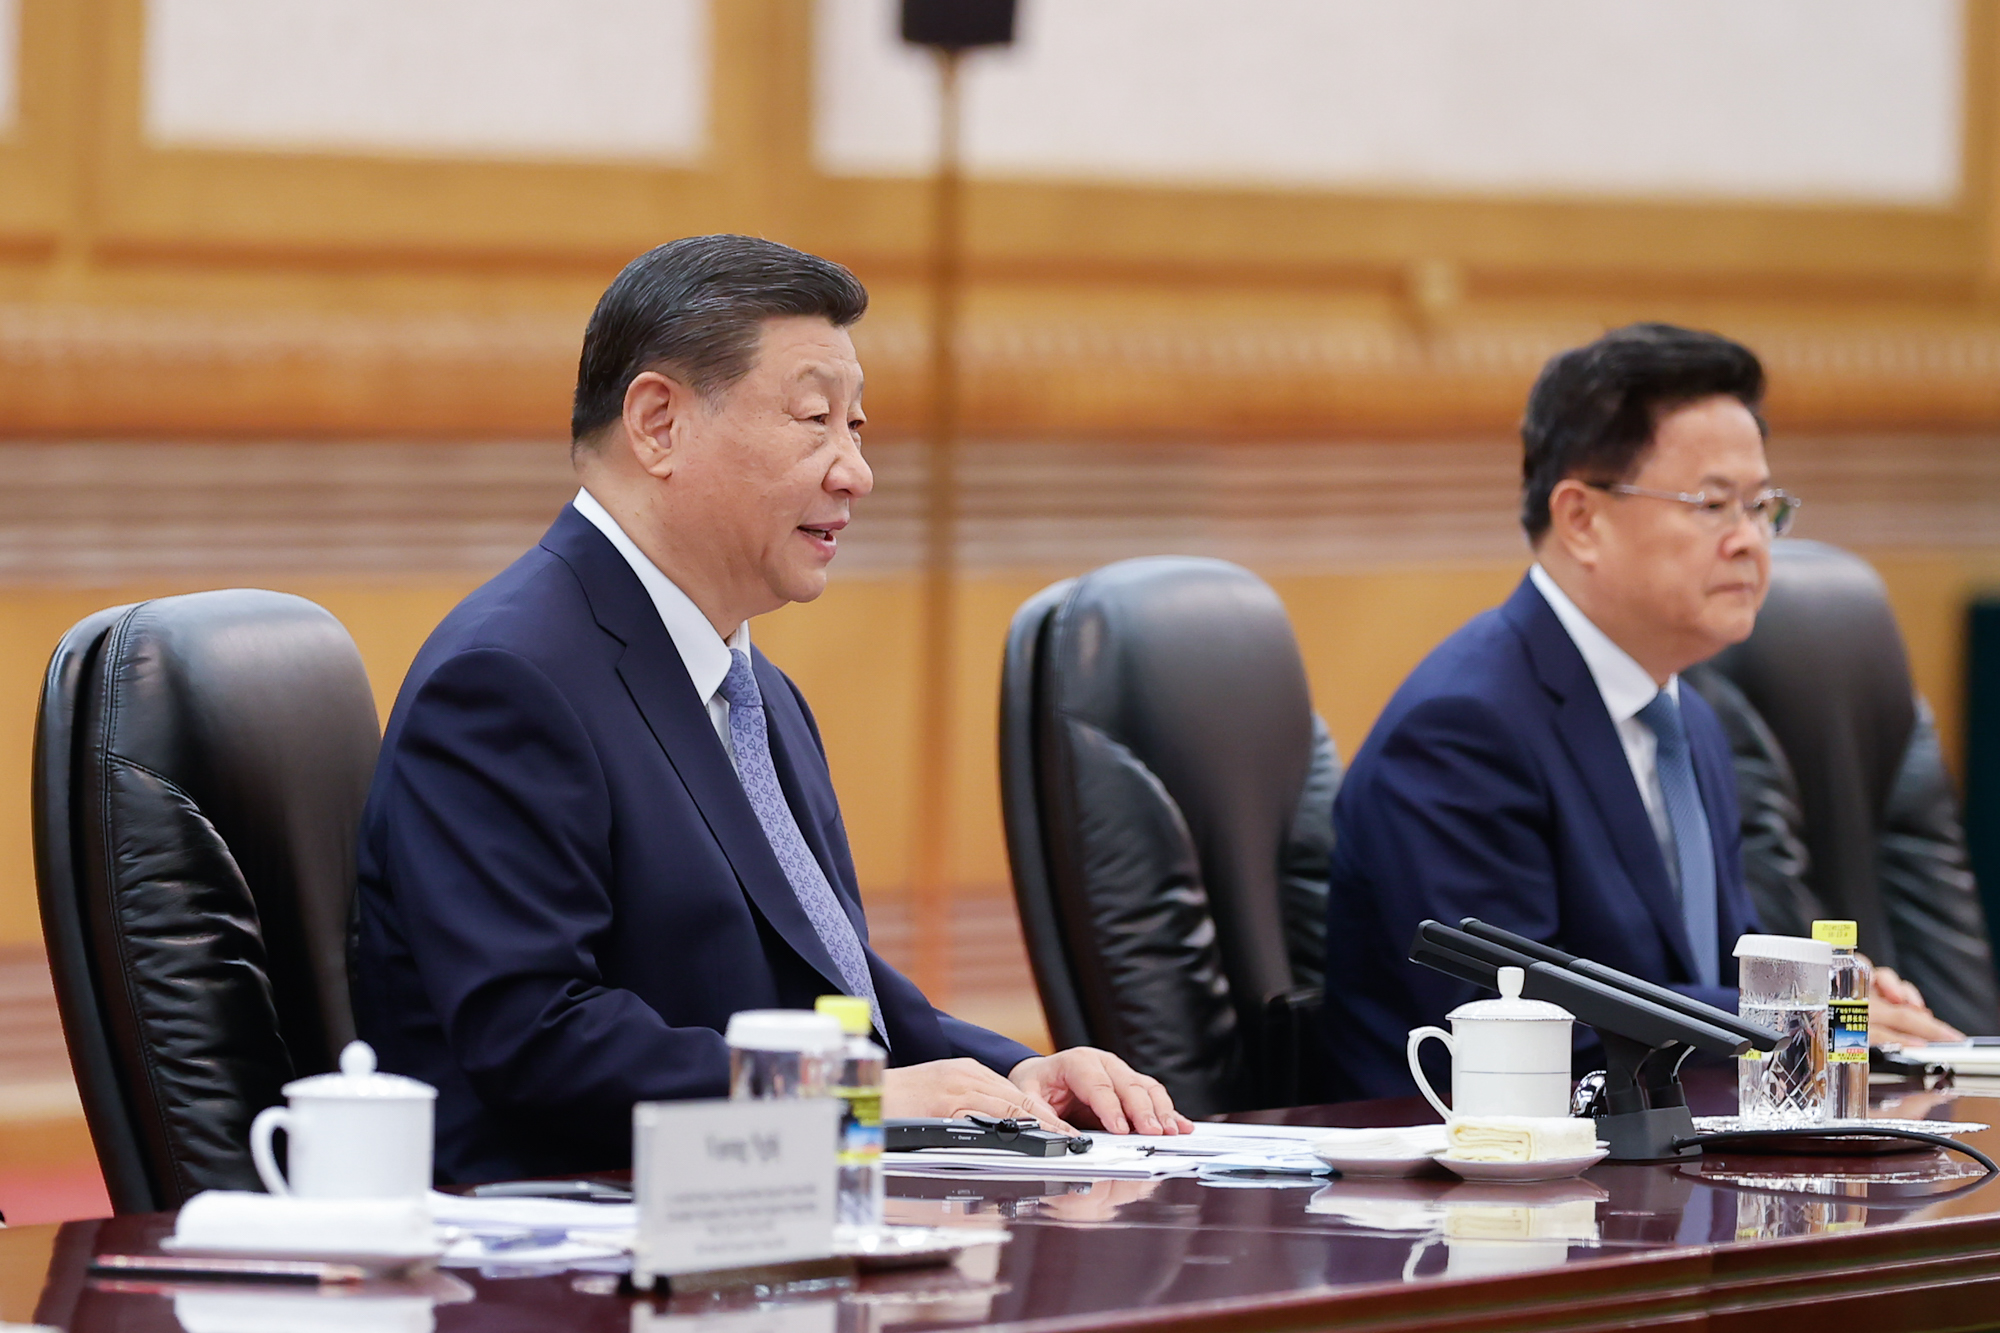 Tổng Bí thư, Chủ tịch Tập Cận Bình khẳng định Trung Quốc coi trọng cao độ và luôn coi quan hệ với Việt Nam là hướng ưu tiên trong tổng thể chính sách ngoại giao láng giềng - Ảnh: VGP/Nhật Bắc